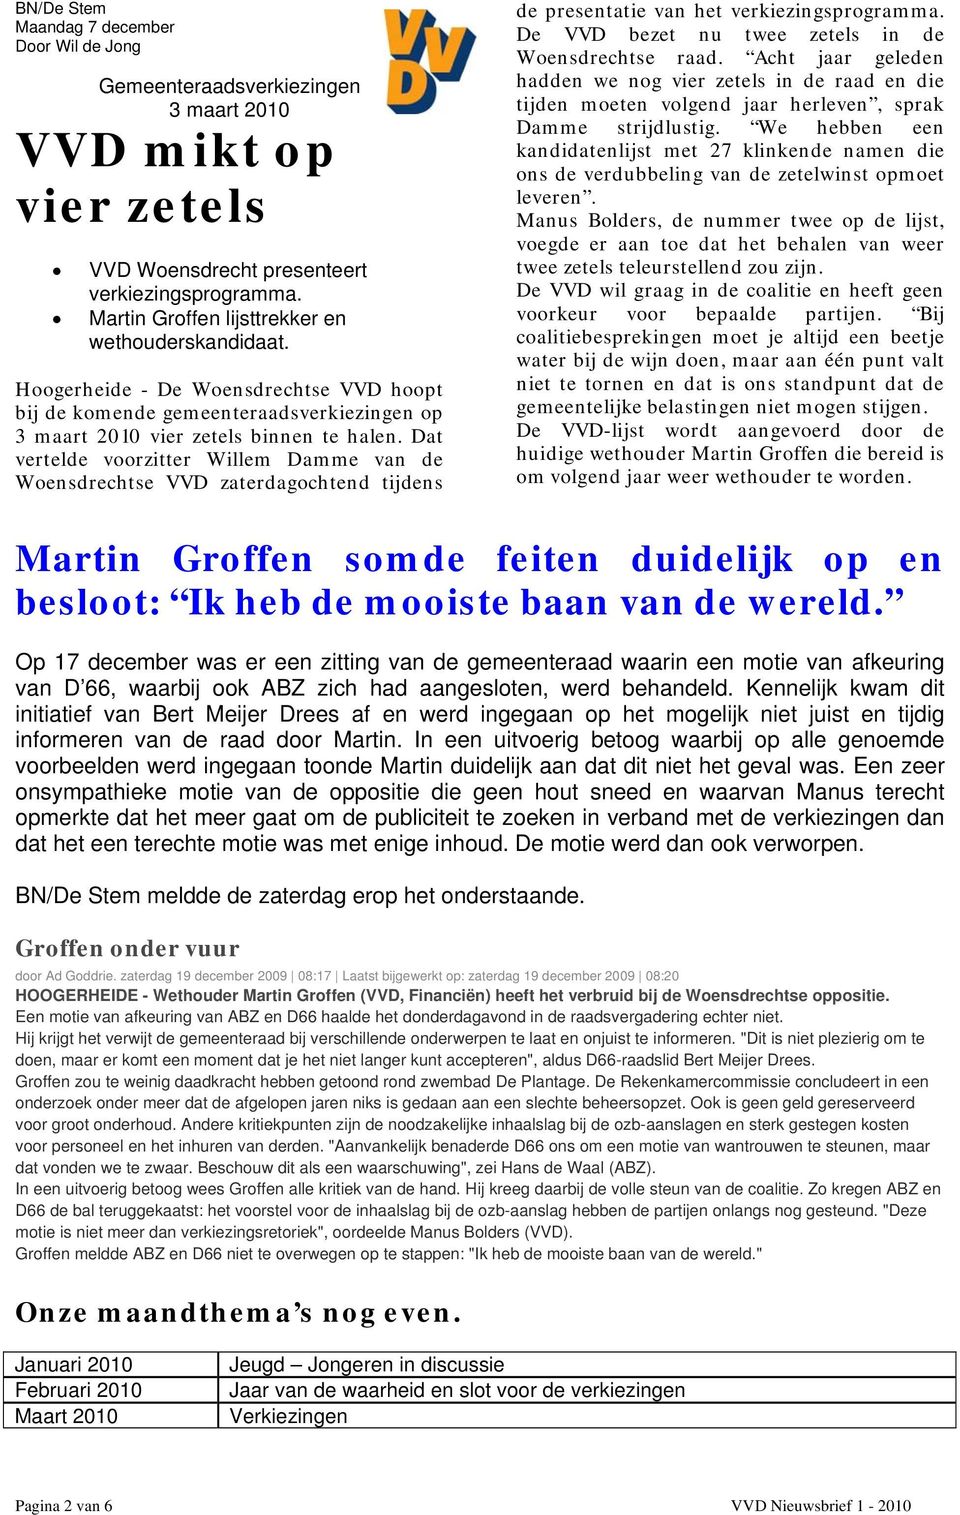 Dat vertelde voorzitter Willem Damme van de Woensdrechtse VVD zaterdagochtend tijdens de presentatie van het verkiezingsprogramma. De VVD bezet nu twee zetels in de Woensdrechtse raad.